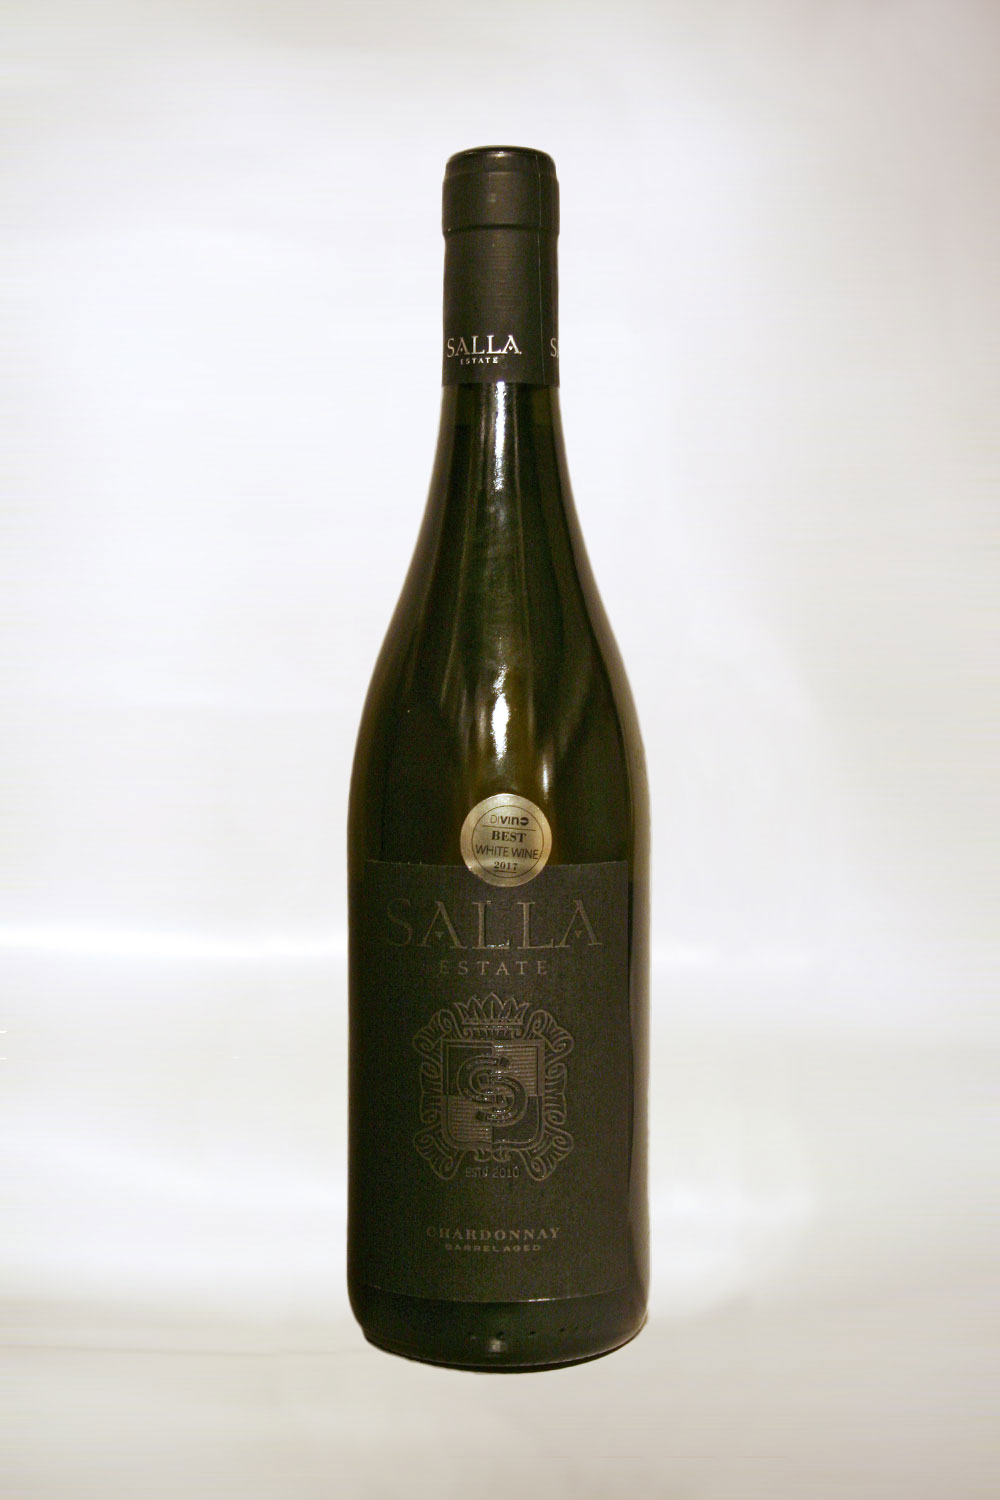 Blaskovo Vineyards Chardonnay Barrel Aged 2013